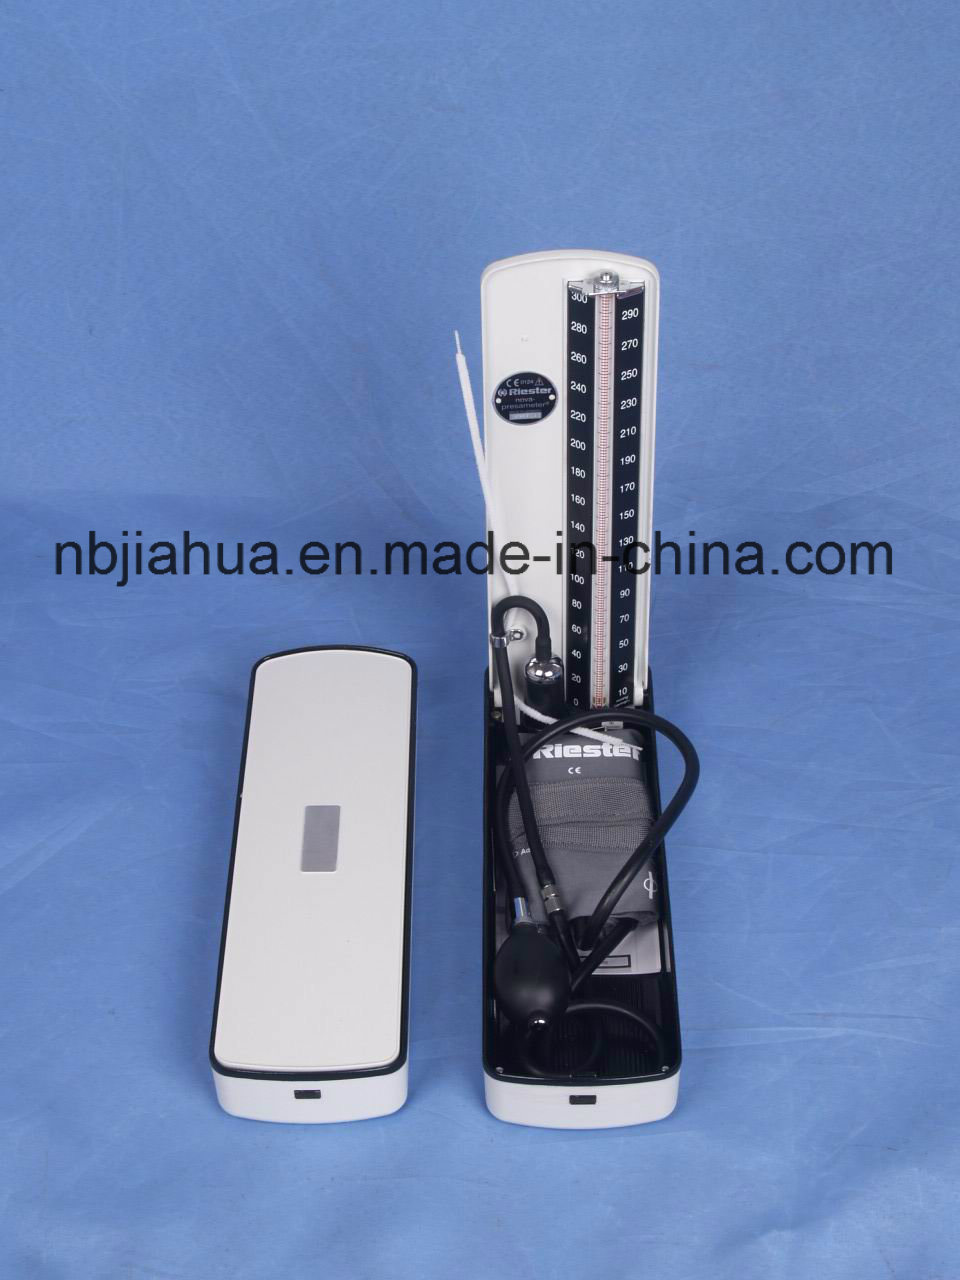 China Manufacturer Medical Normal Sphygmomanometer